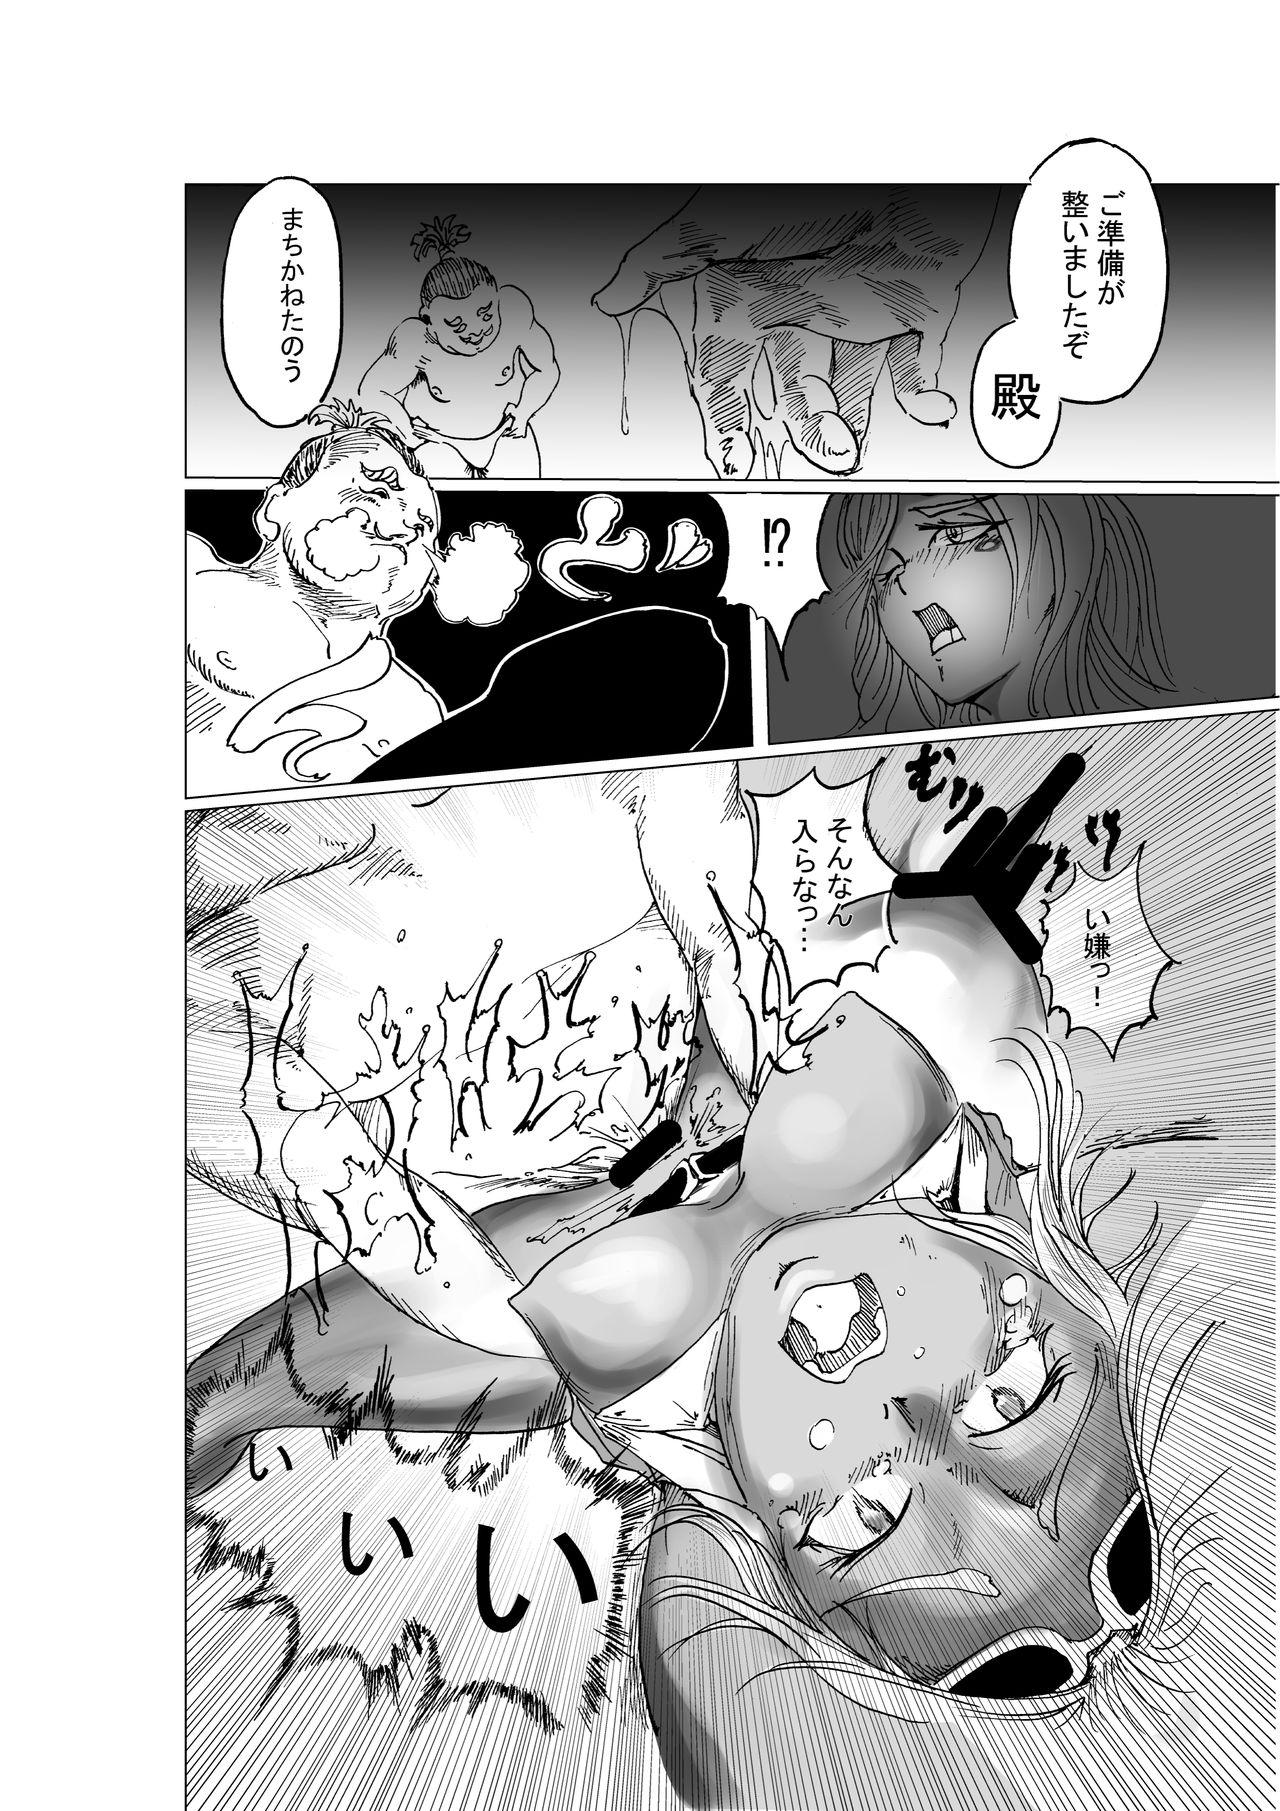 Men 黒忍アゲハ - Original Pickup - Page 6